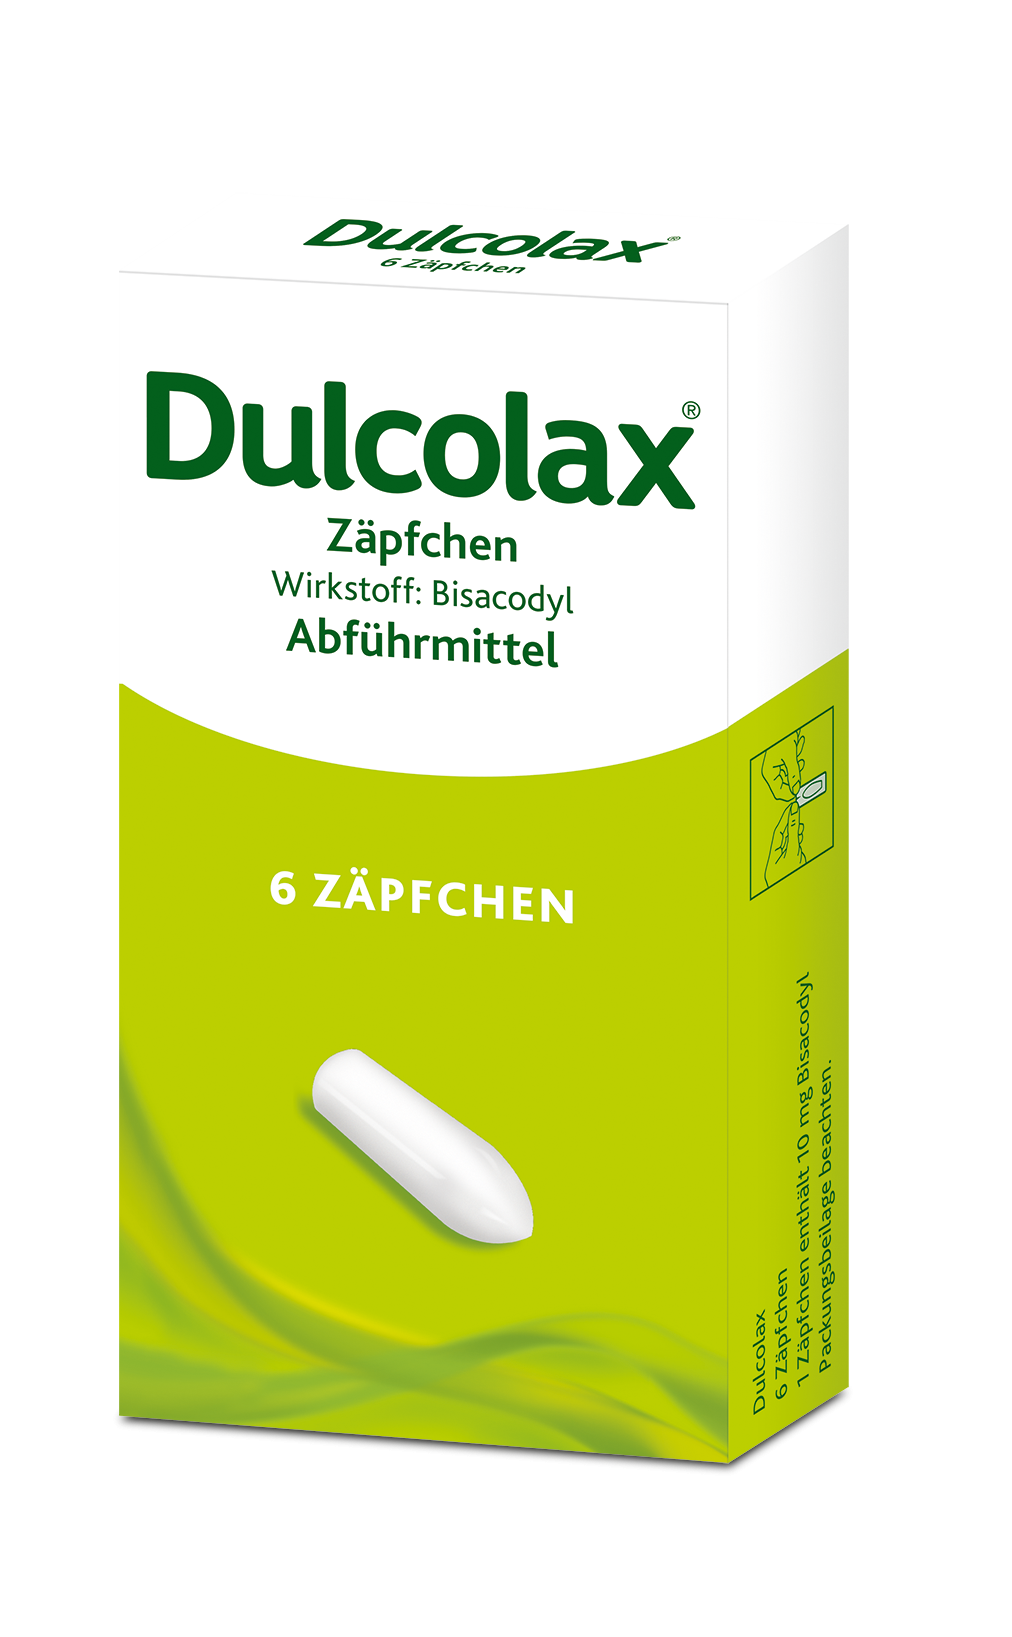 Dulcolax® Zäpfchen